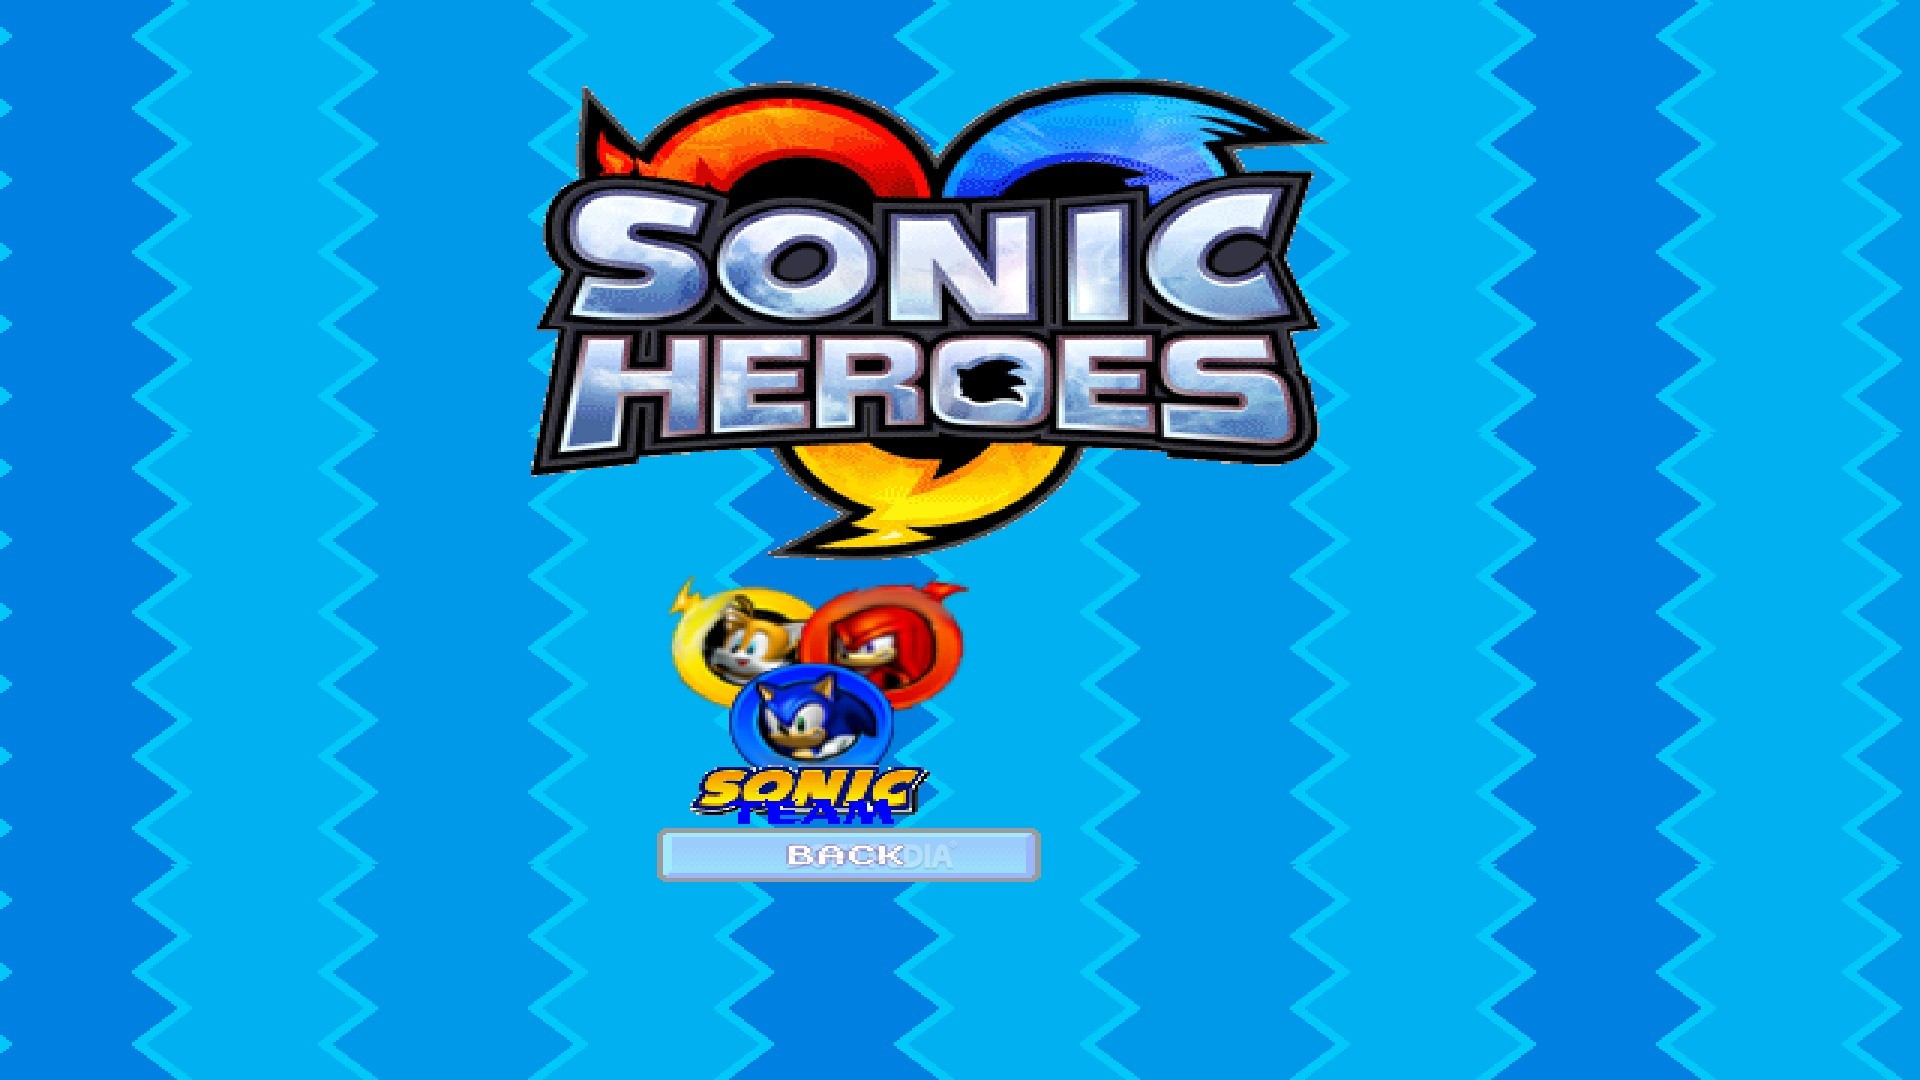 ดาวน์โหลด Super Sonic Heroes APK สำหรับ Android